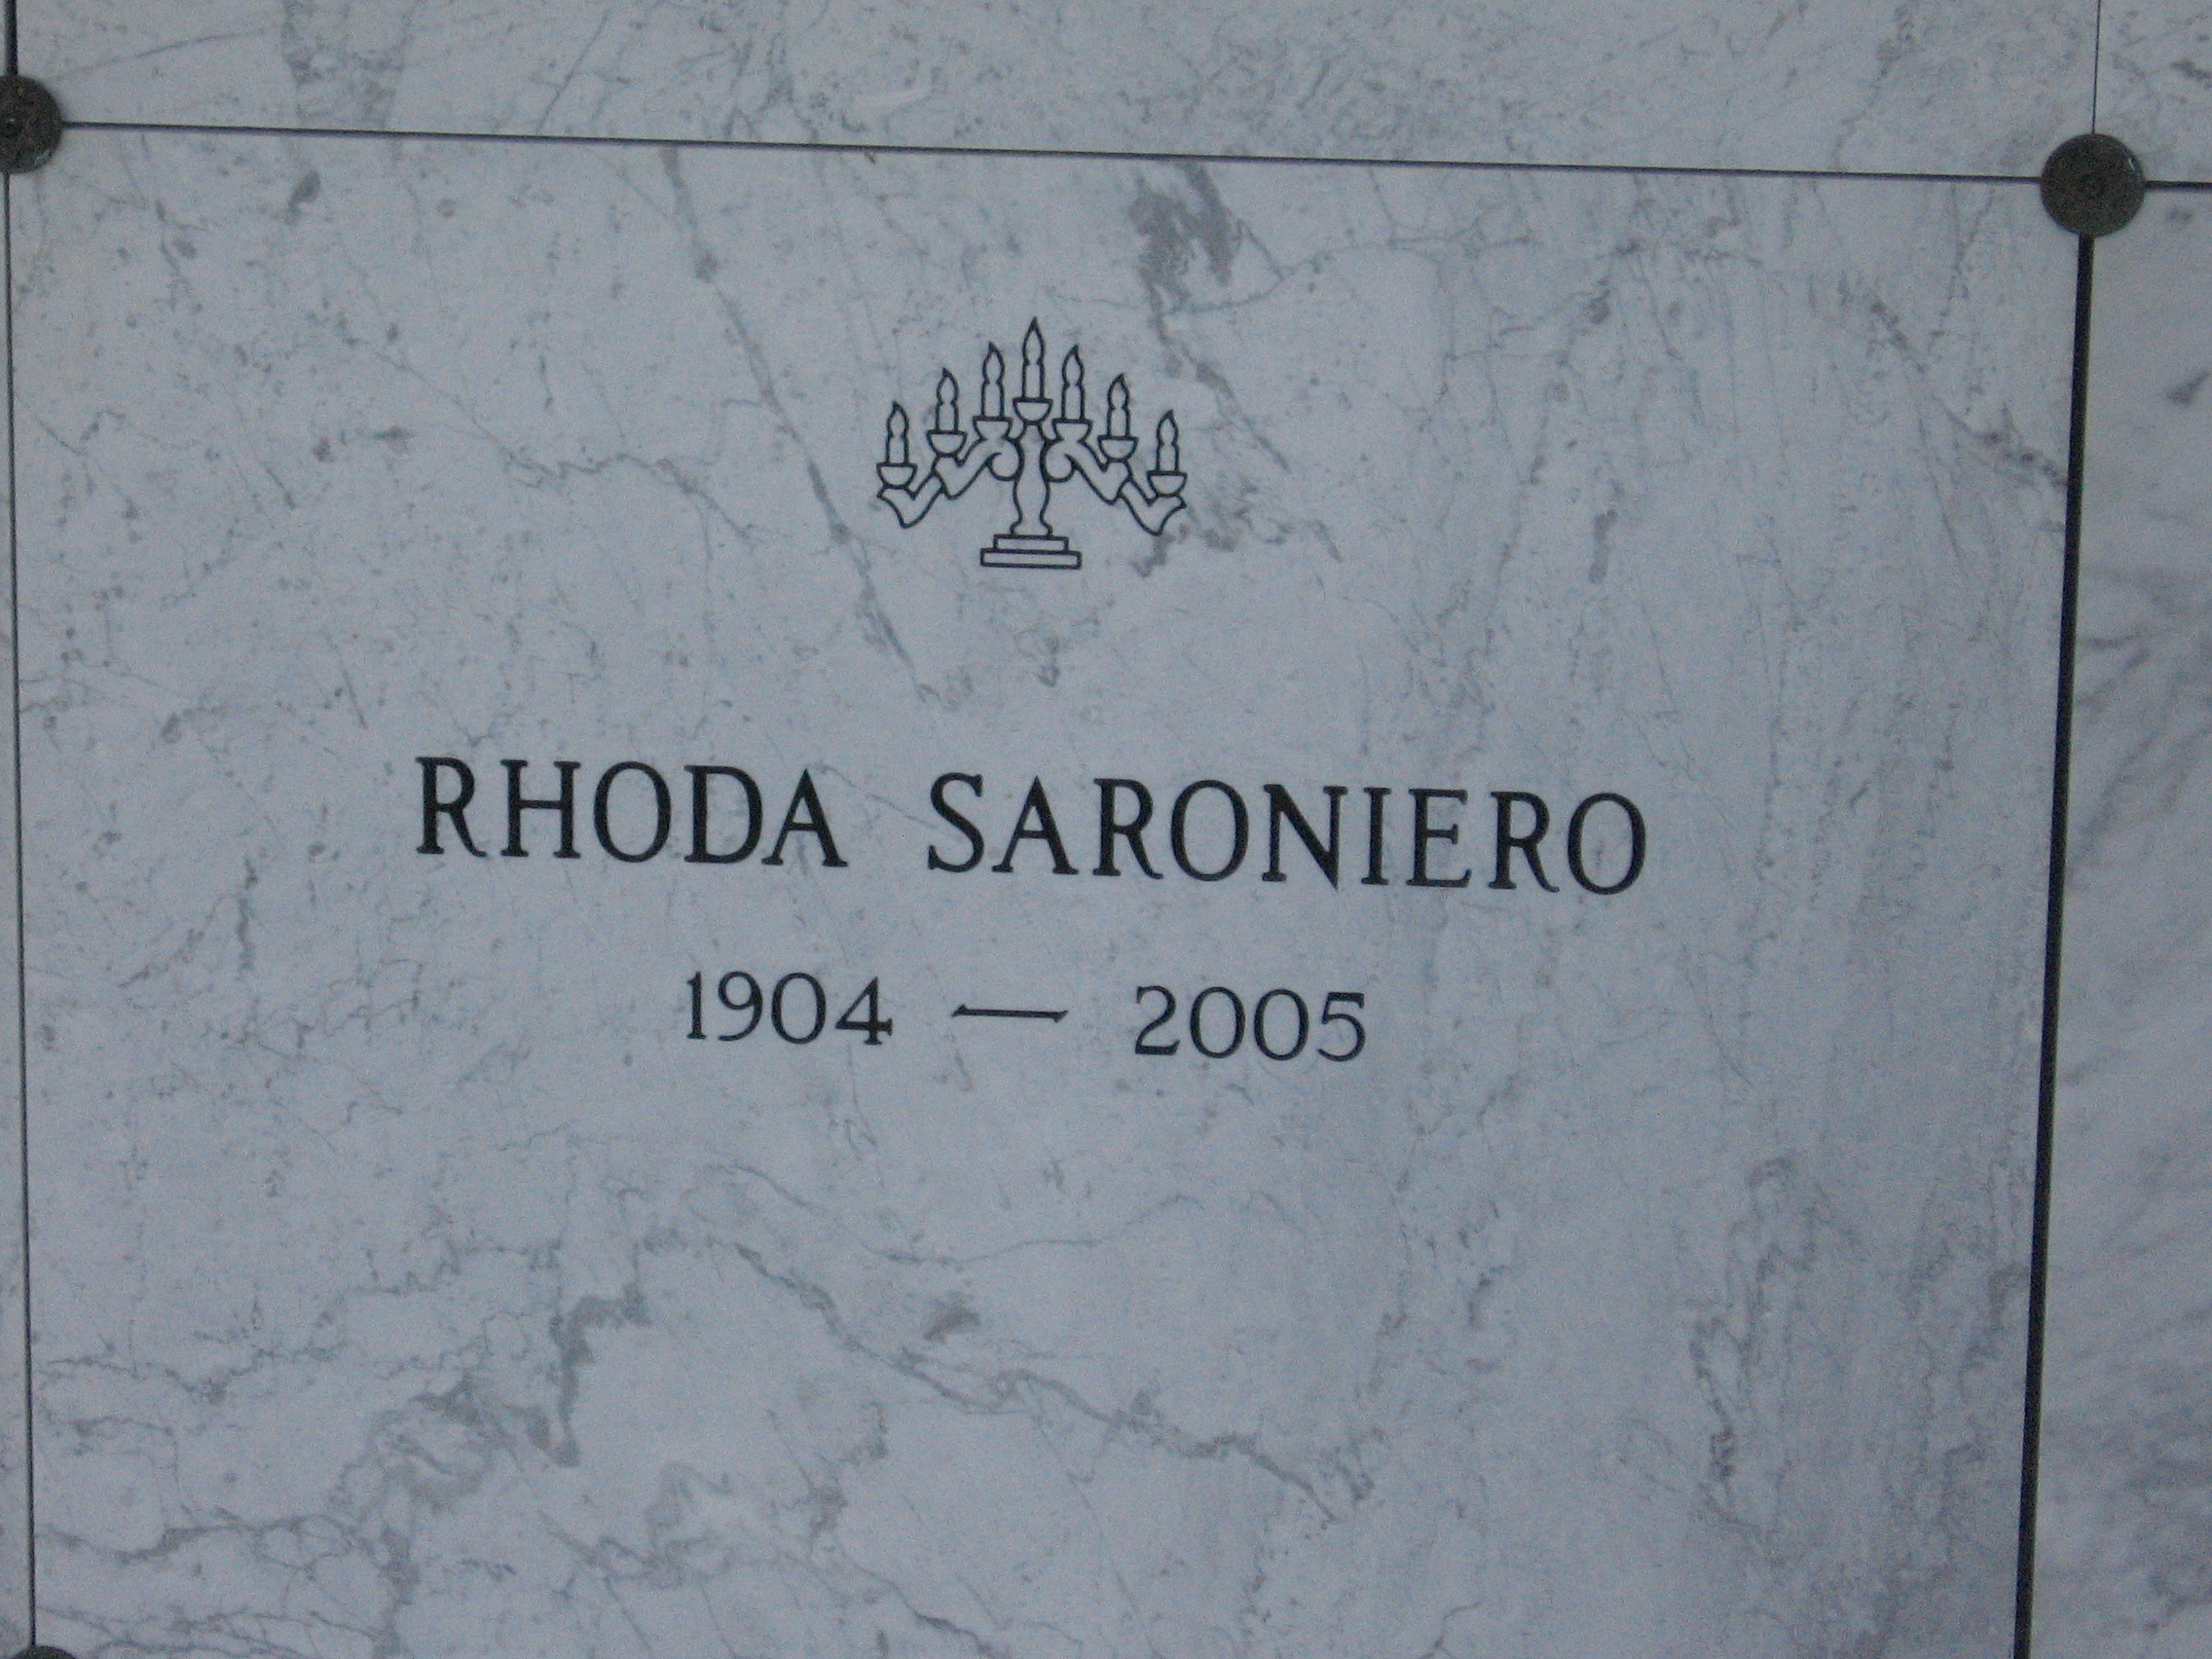 Rhoda Saroniero